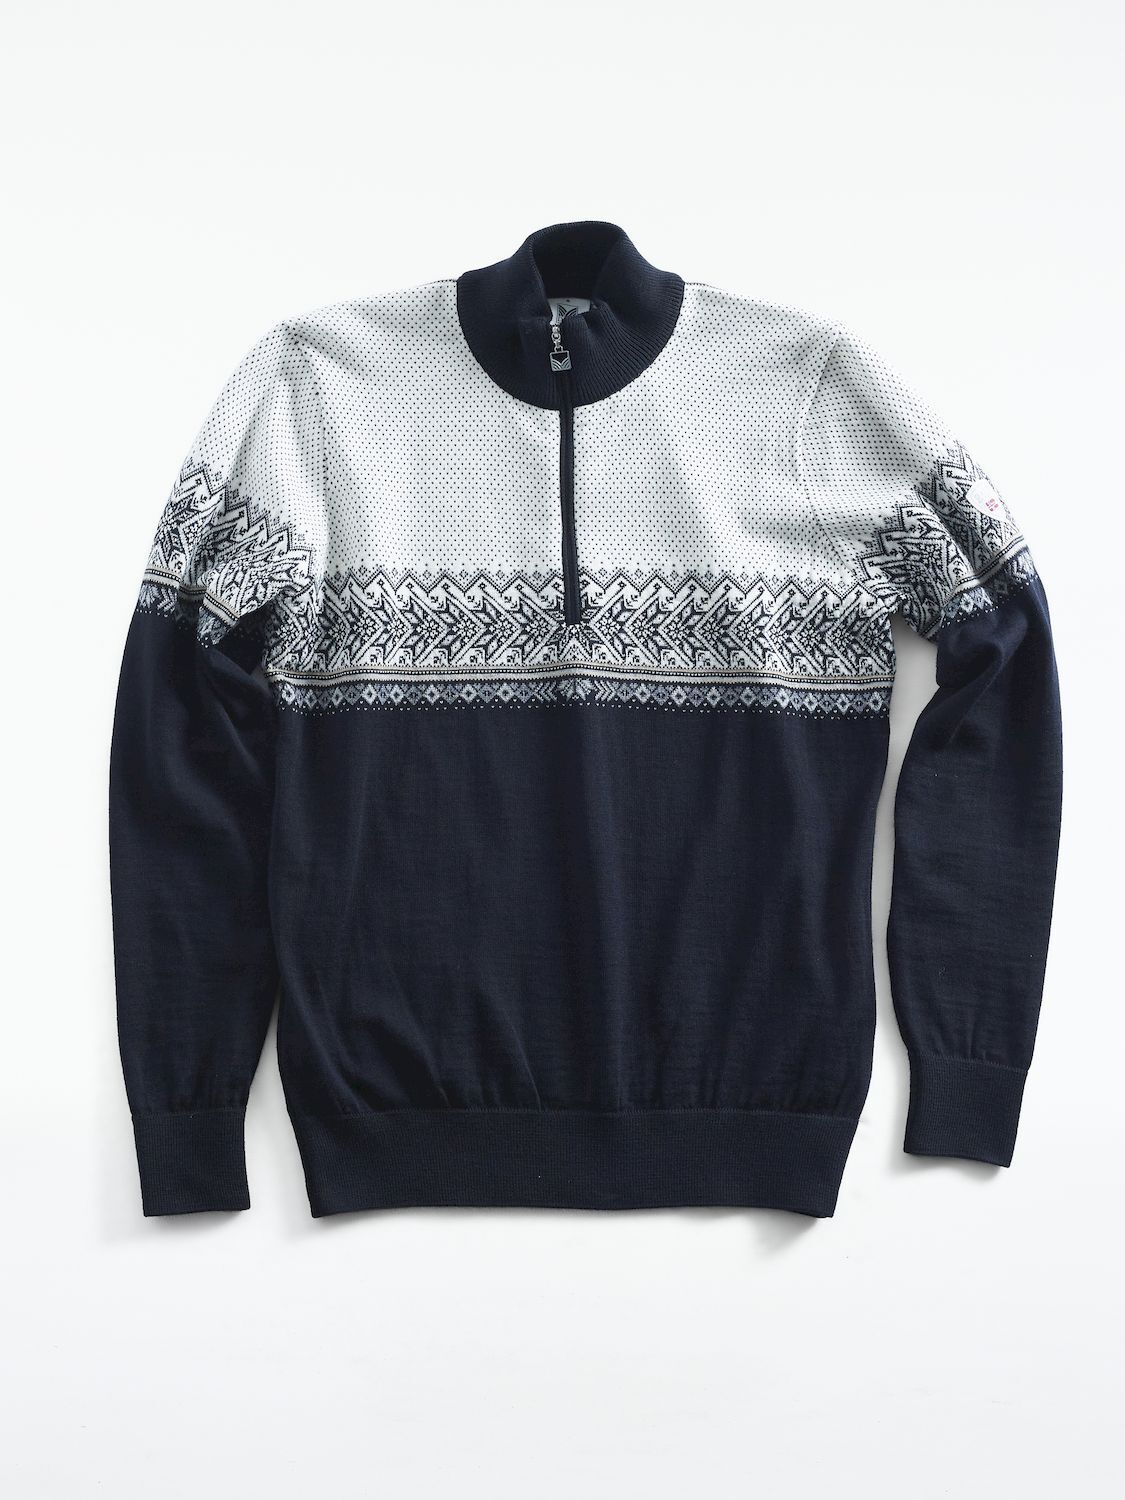 Dale of Norway Hovden Sweater  - Pullover - Herren